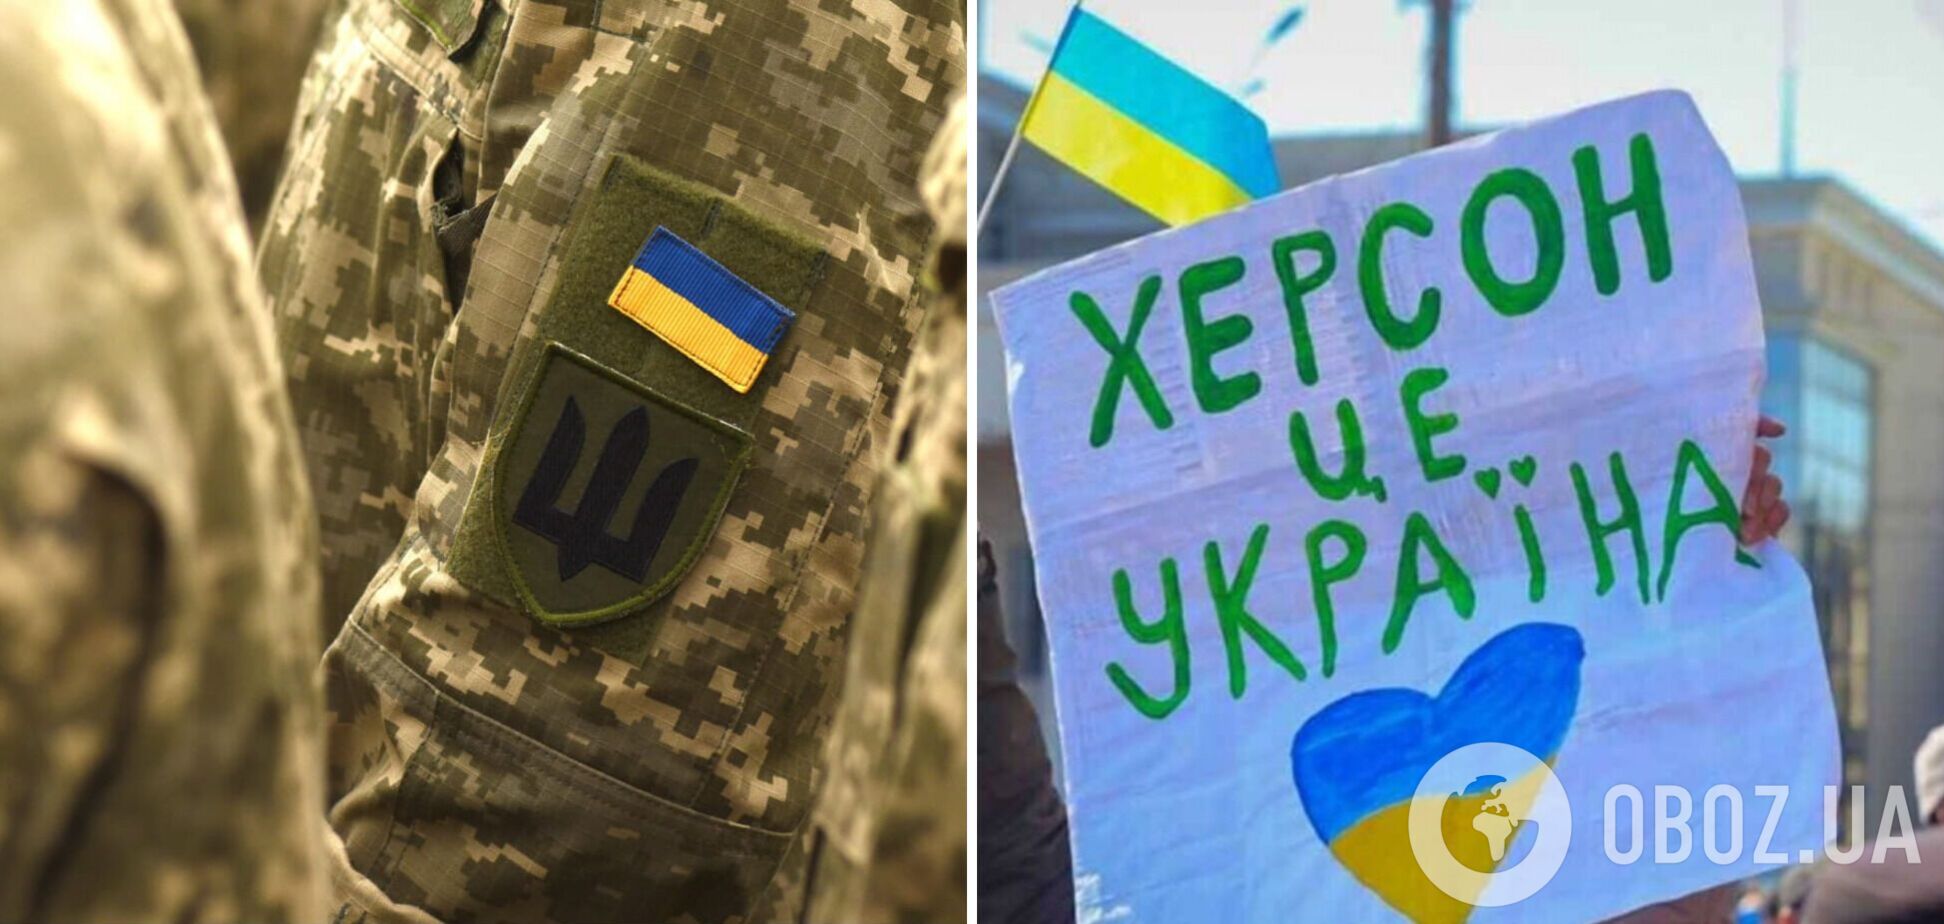 'Херсон, держись!' Украинские защитники записали обращение в 10 км от города. Видео